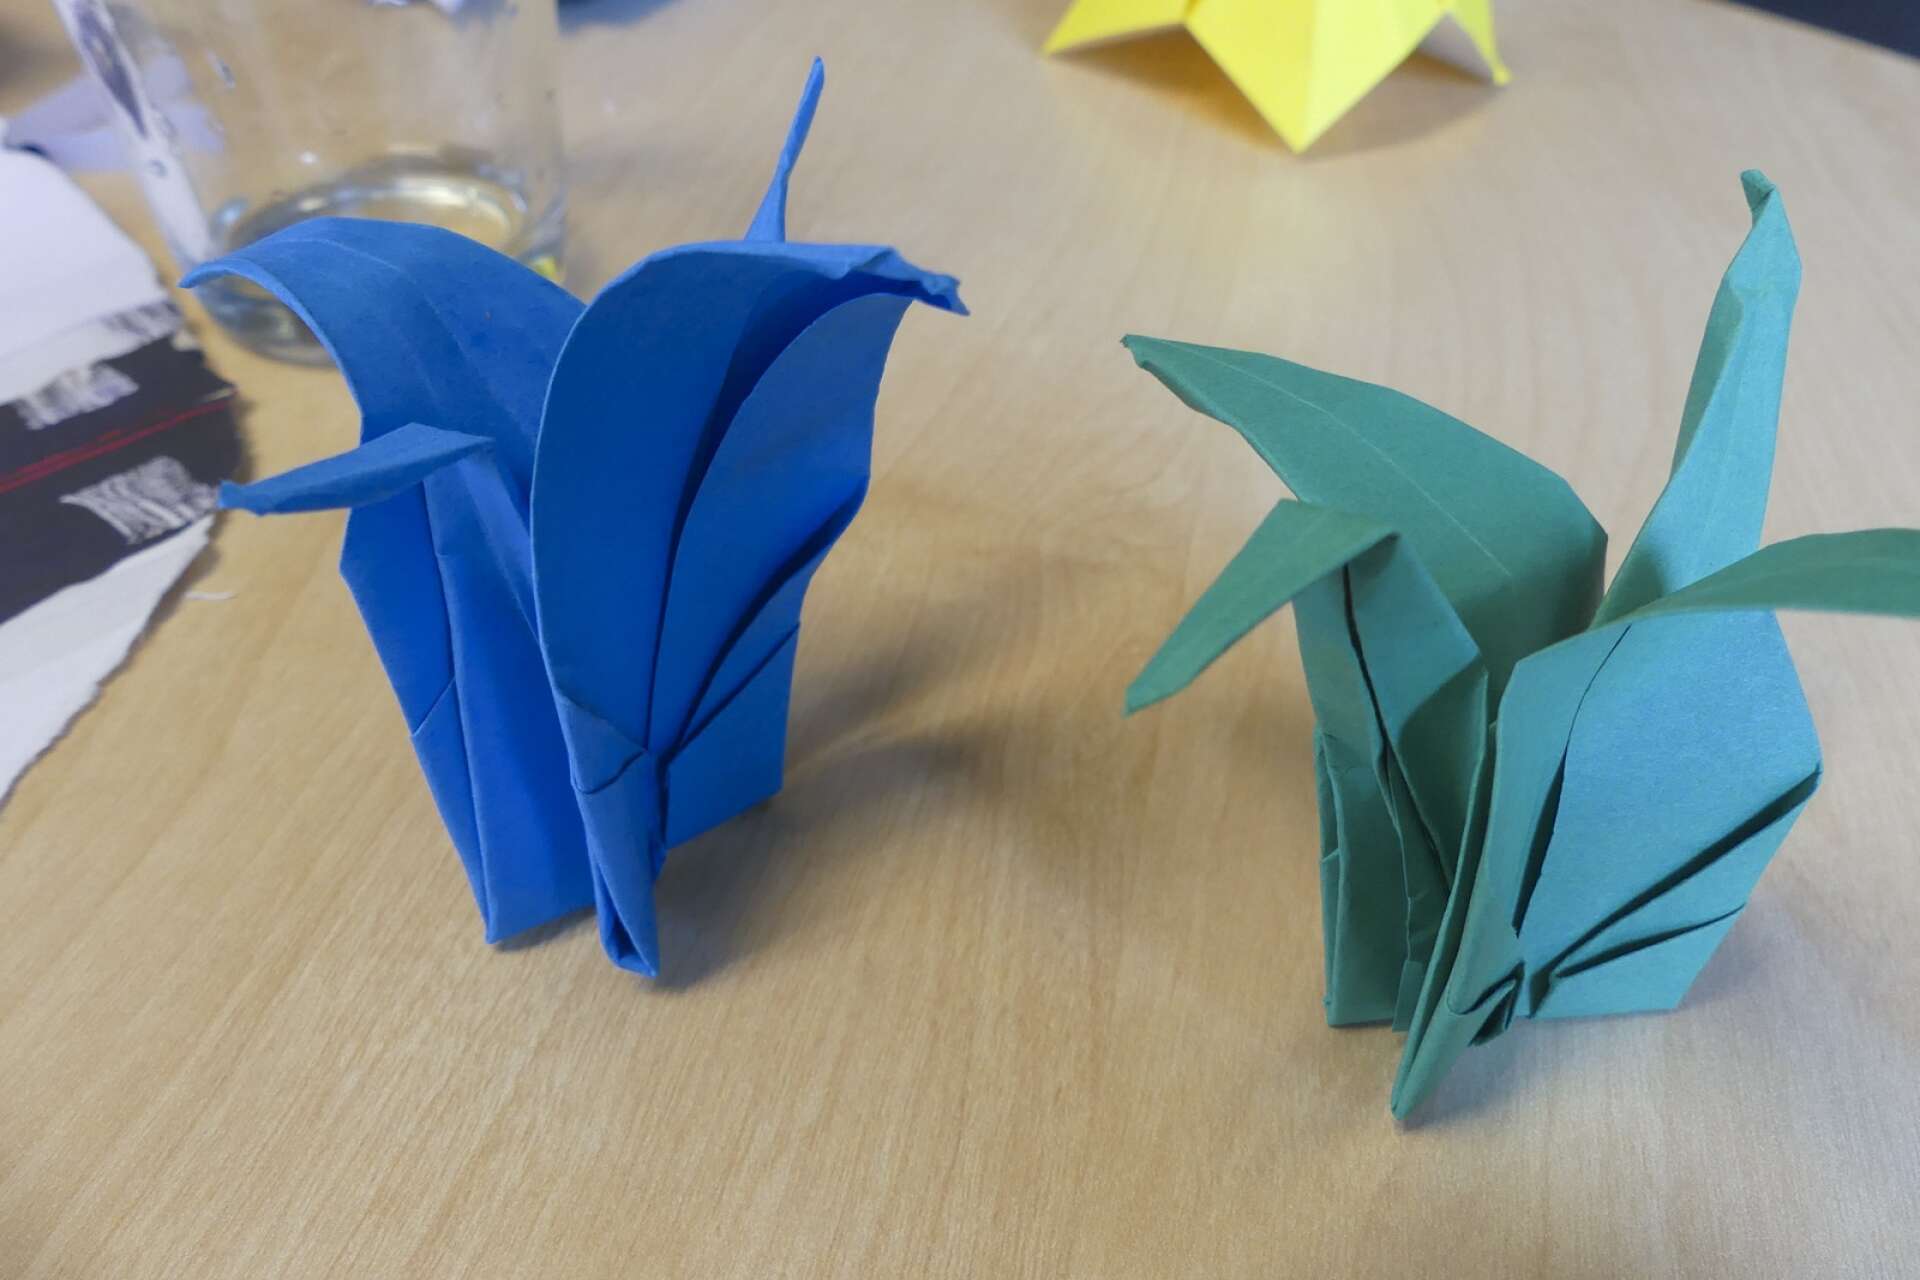 Origami är en av veckans påsklovsaktiviteter. Genrebild.